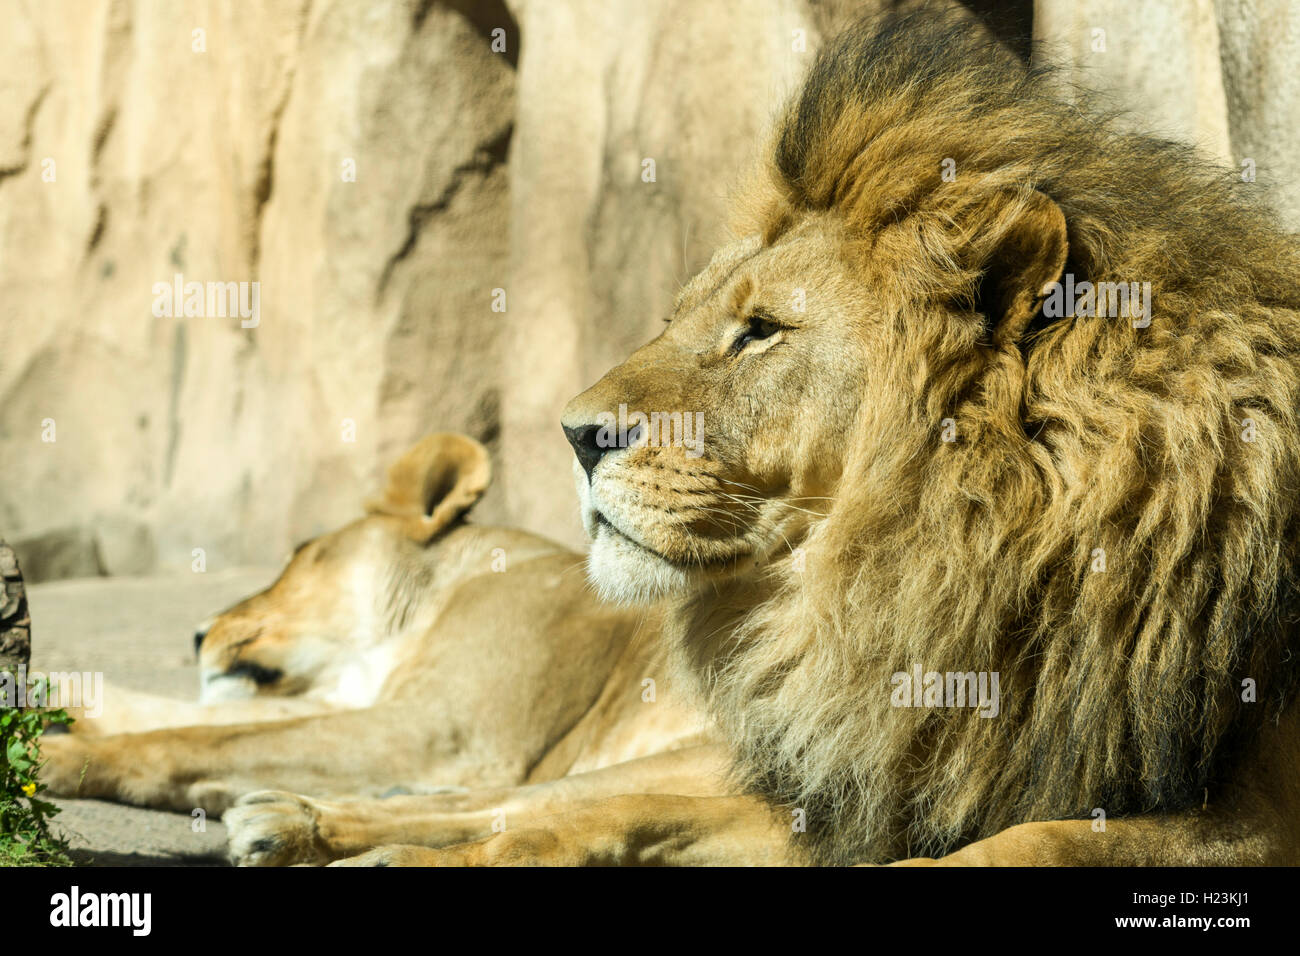 Macho león africano (Panthera leo) está tendido en el suelo, cautiva, Dresde, Sajonia, Alemania Foto de stock